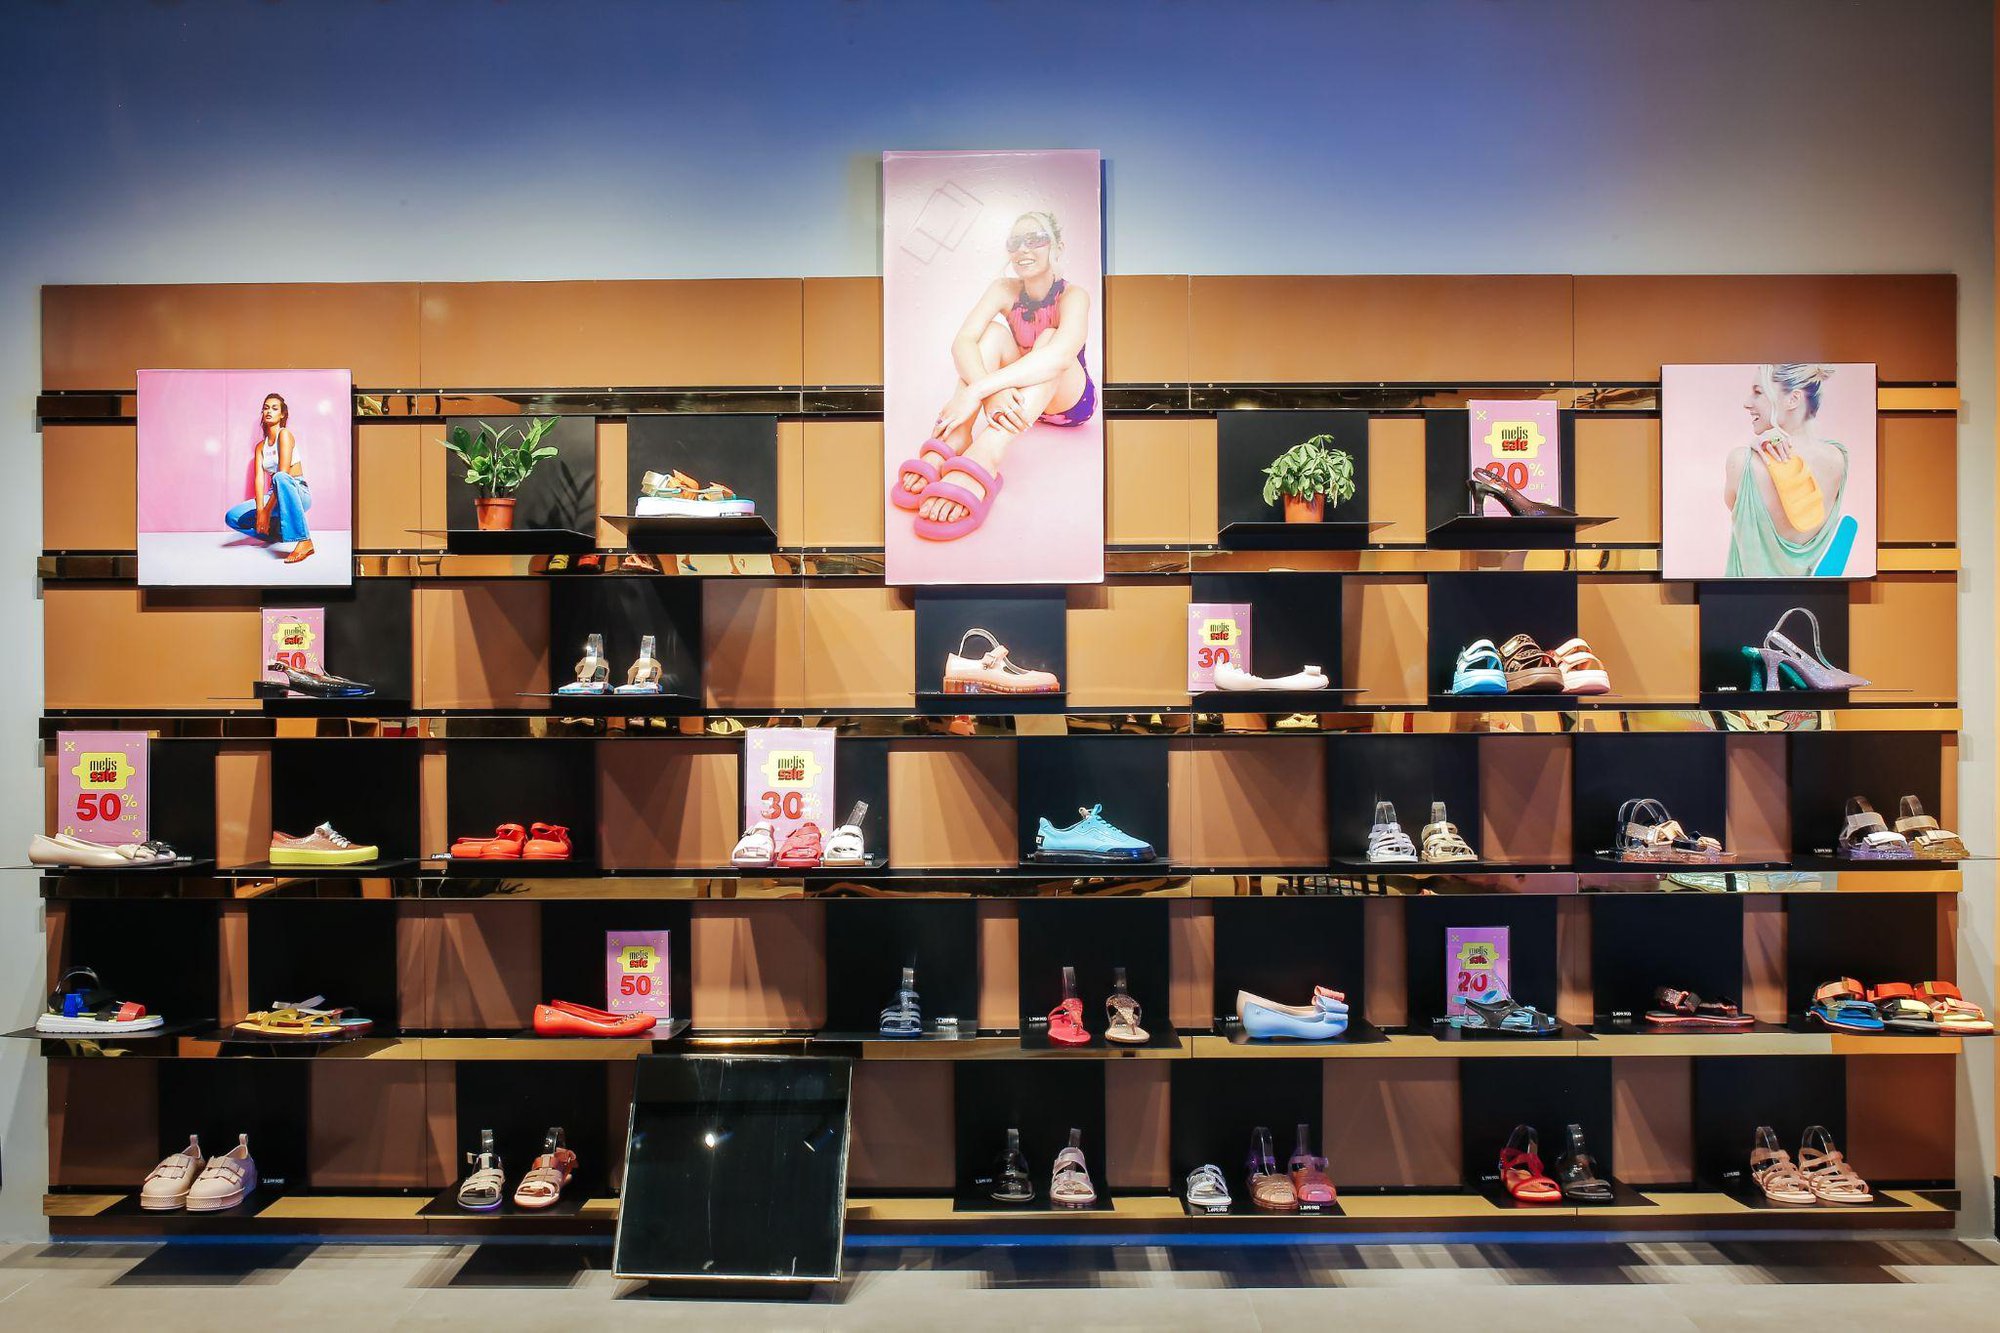 Melissa chiều lòng hội yêu thời trang bền vững với cửa hàng mới ở trung tâm Hà Nội - Ảnh 1.